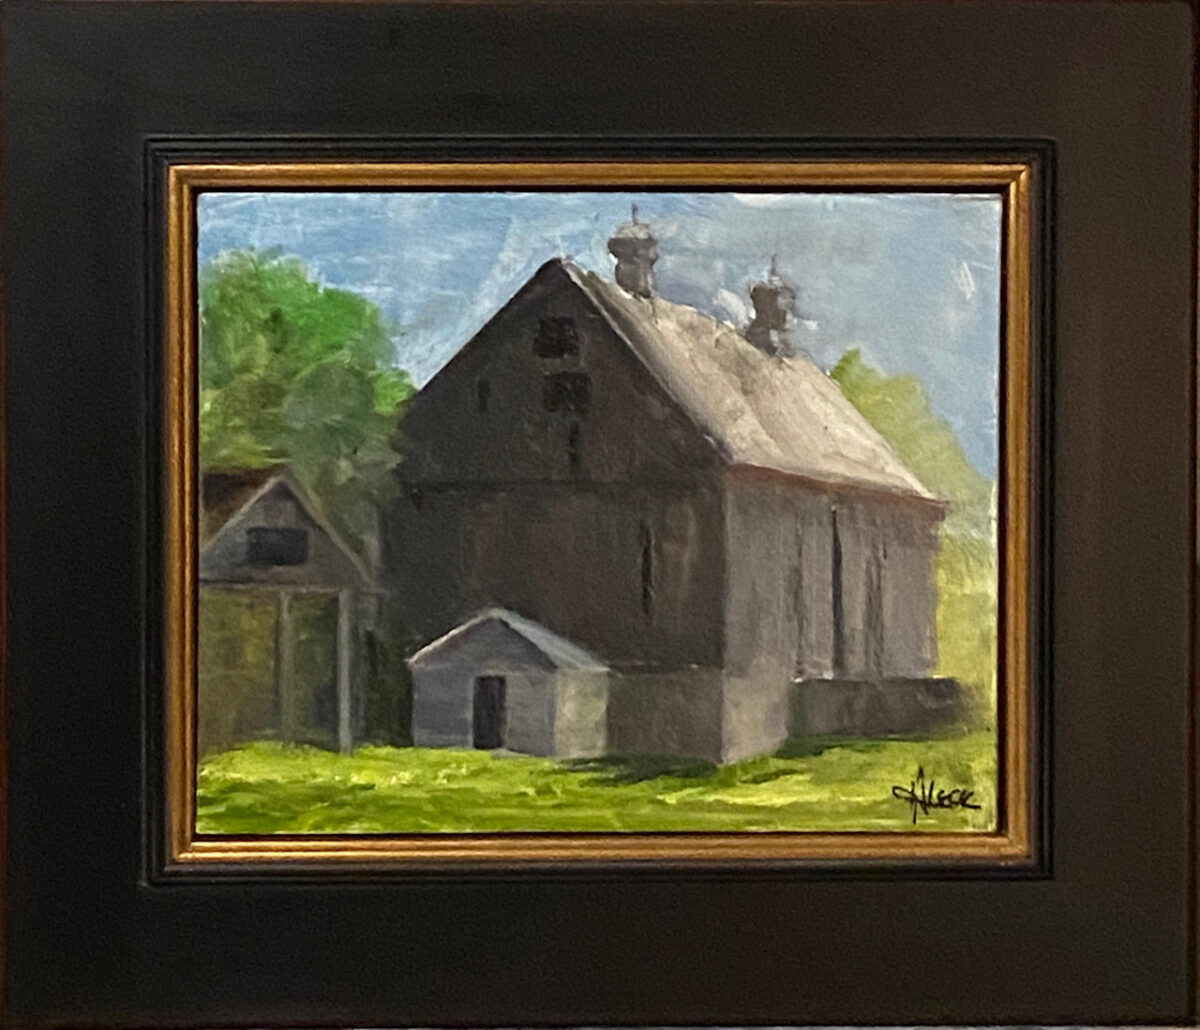 211 - Bloomfield Barn - 8 x 10 - Landscape - $275